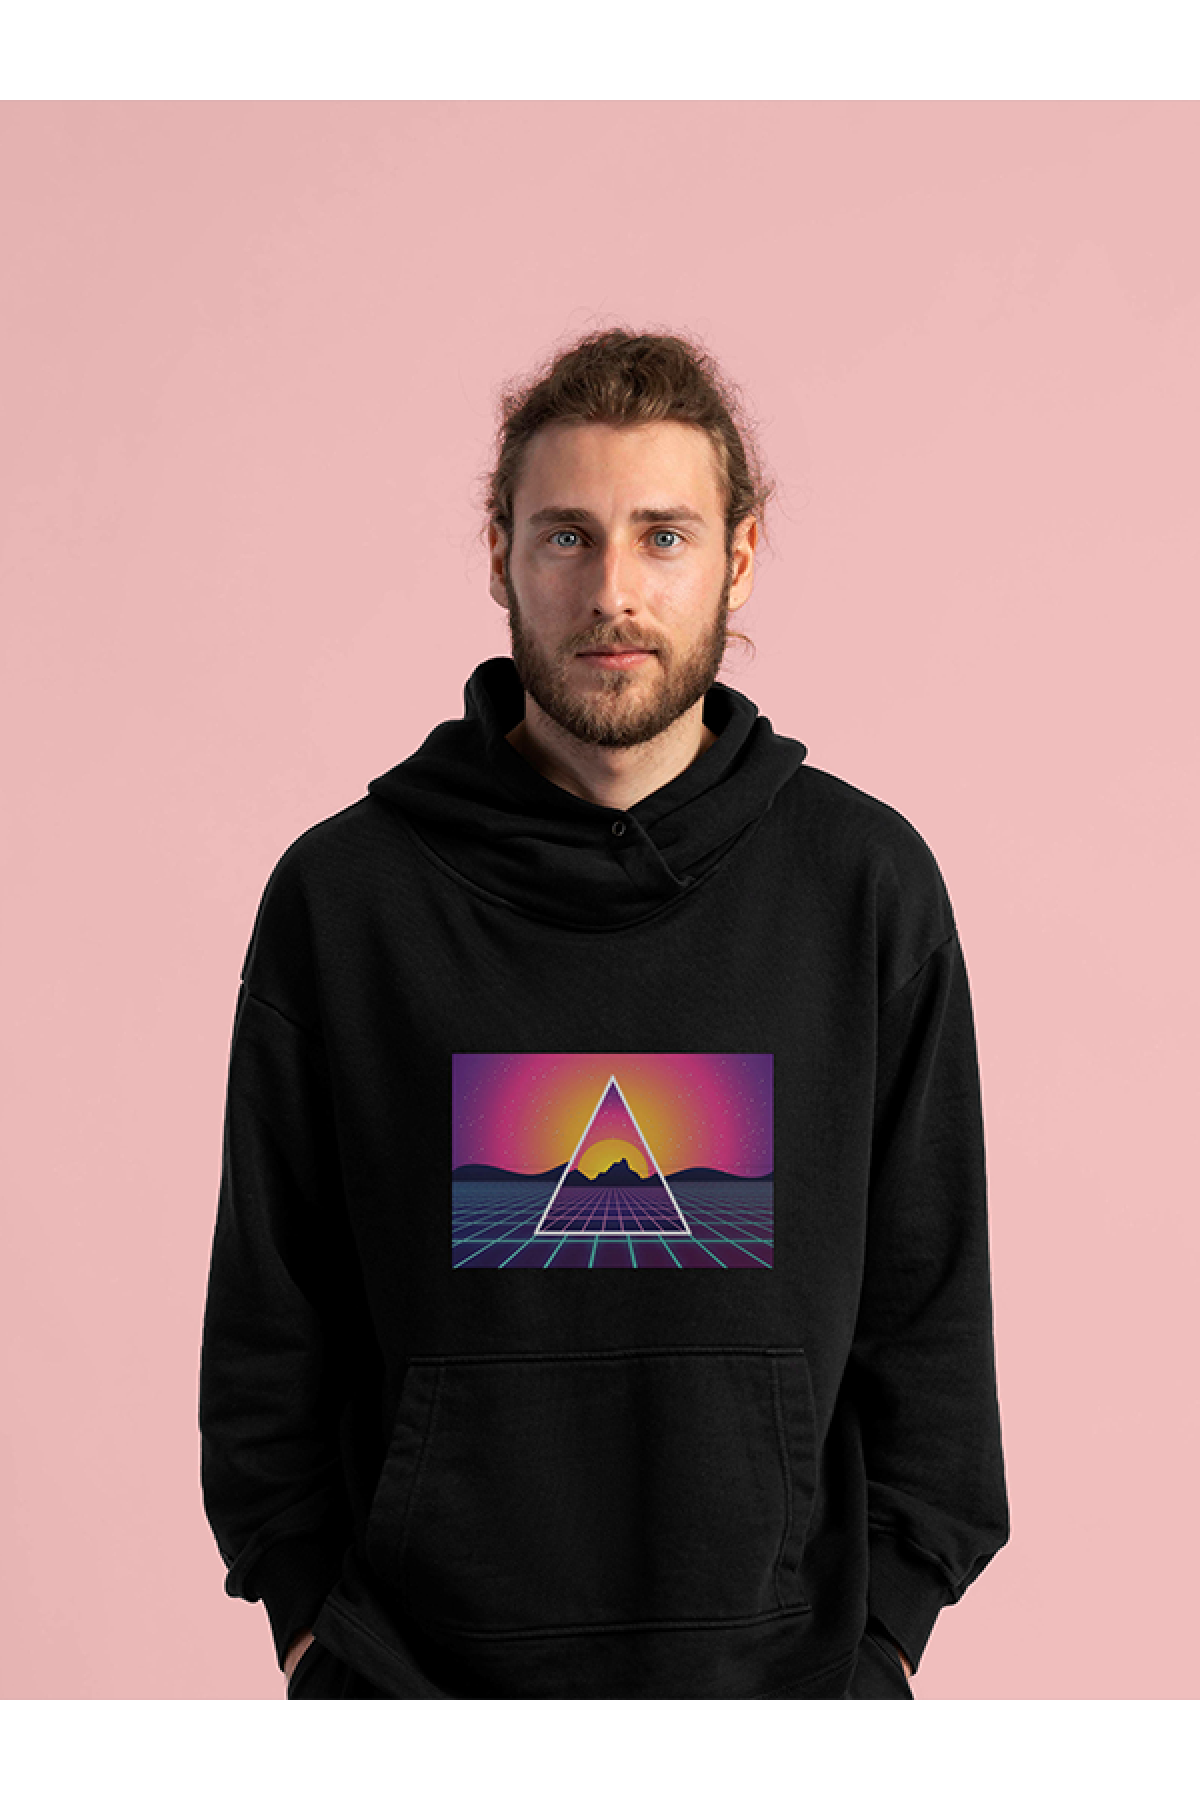 MIJUSTORE Vapor Wave Renkli Design Baskılı Tasarım 3 İplik Kalın Siyah Hoodie Sweatshirt